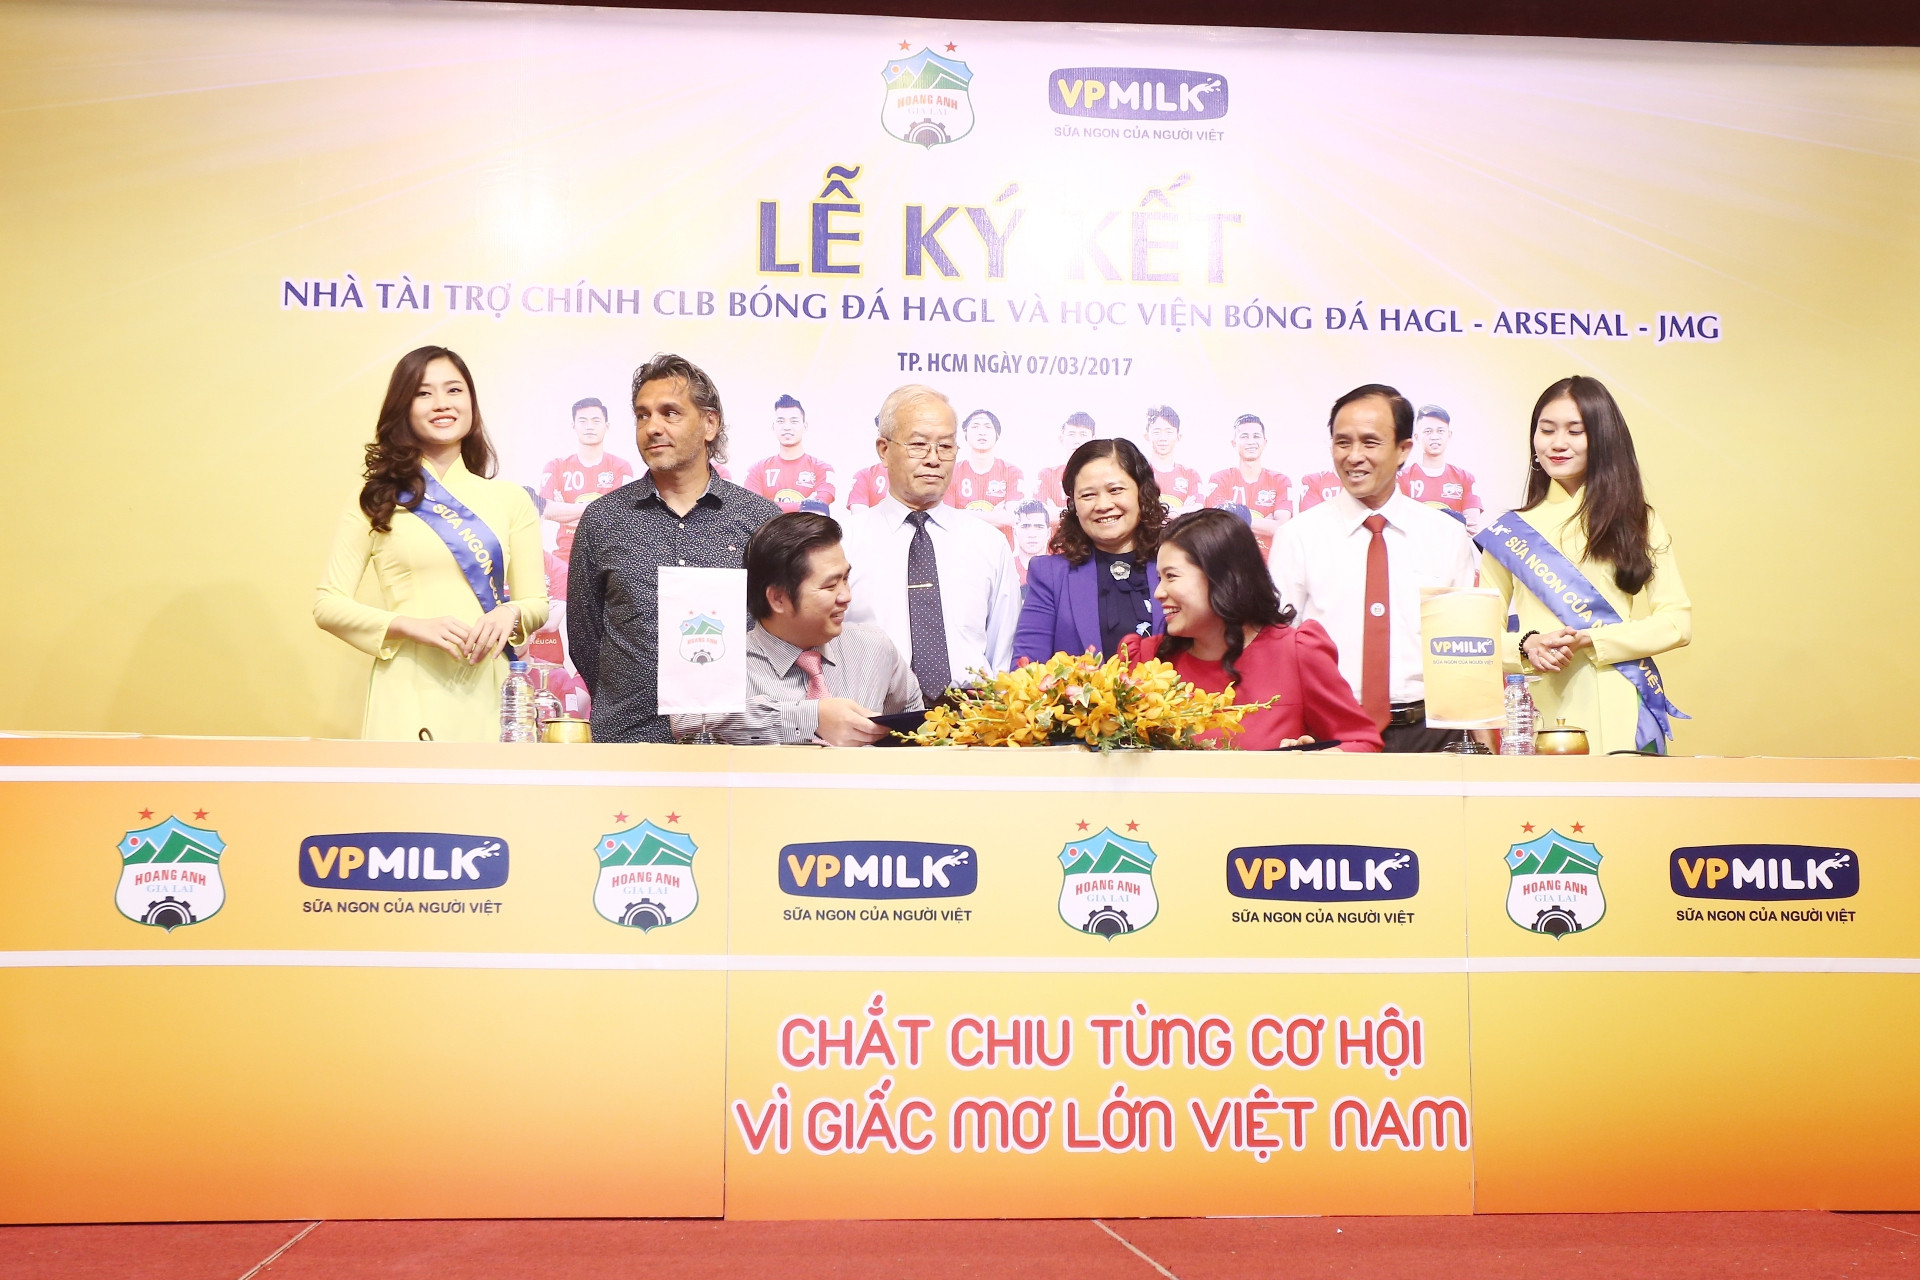 VPMilk sẽ đồng hành cùng HAGL trong các hoạt động như: Đào tạo tài năng bóng đá trẻ Việt Nam, chăm lo các cầu thủ và học viên điều kiện sinh hoạt, tập luyện, chế độ dinh dưỡng tốt nhất